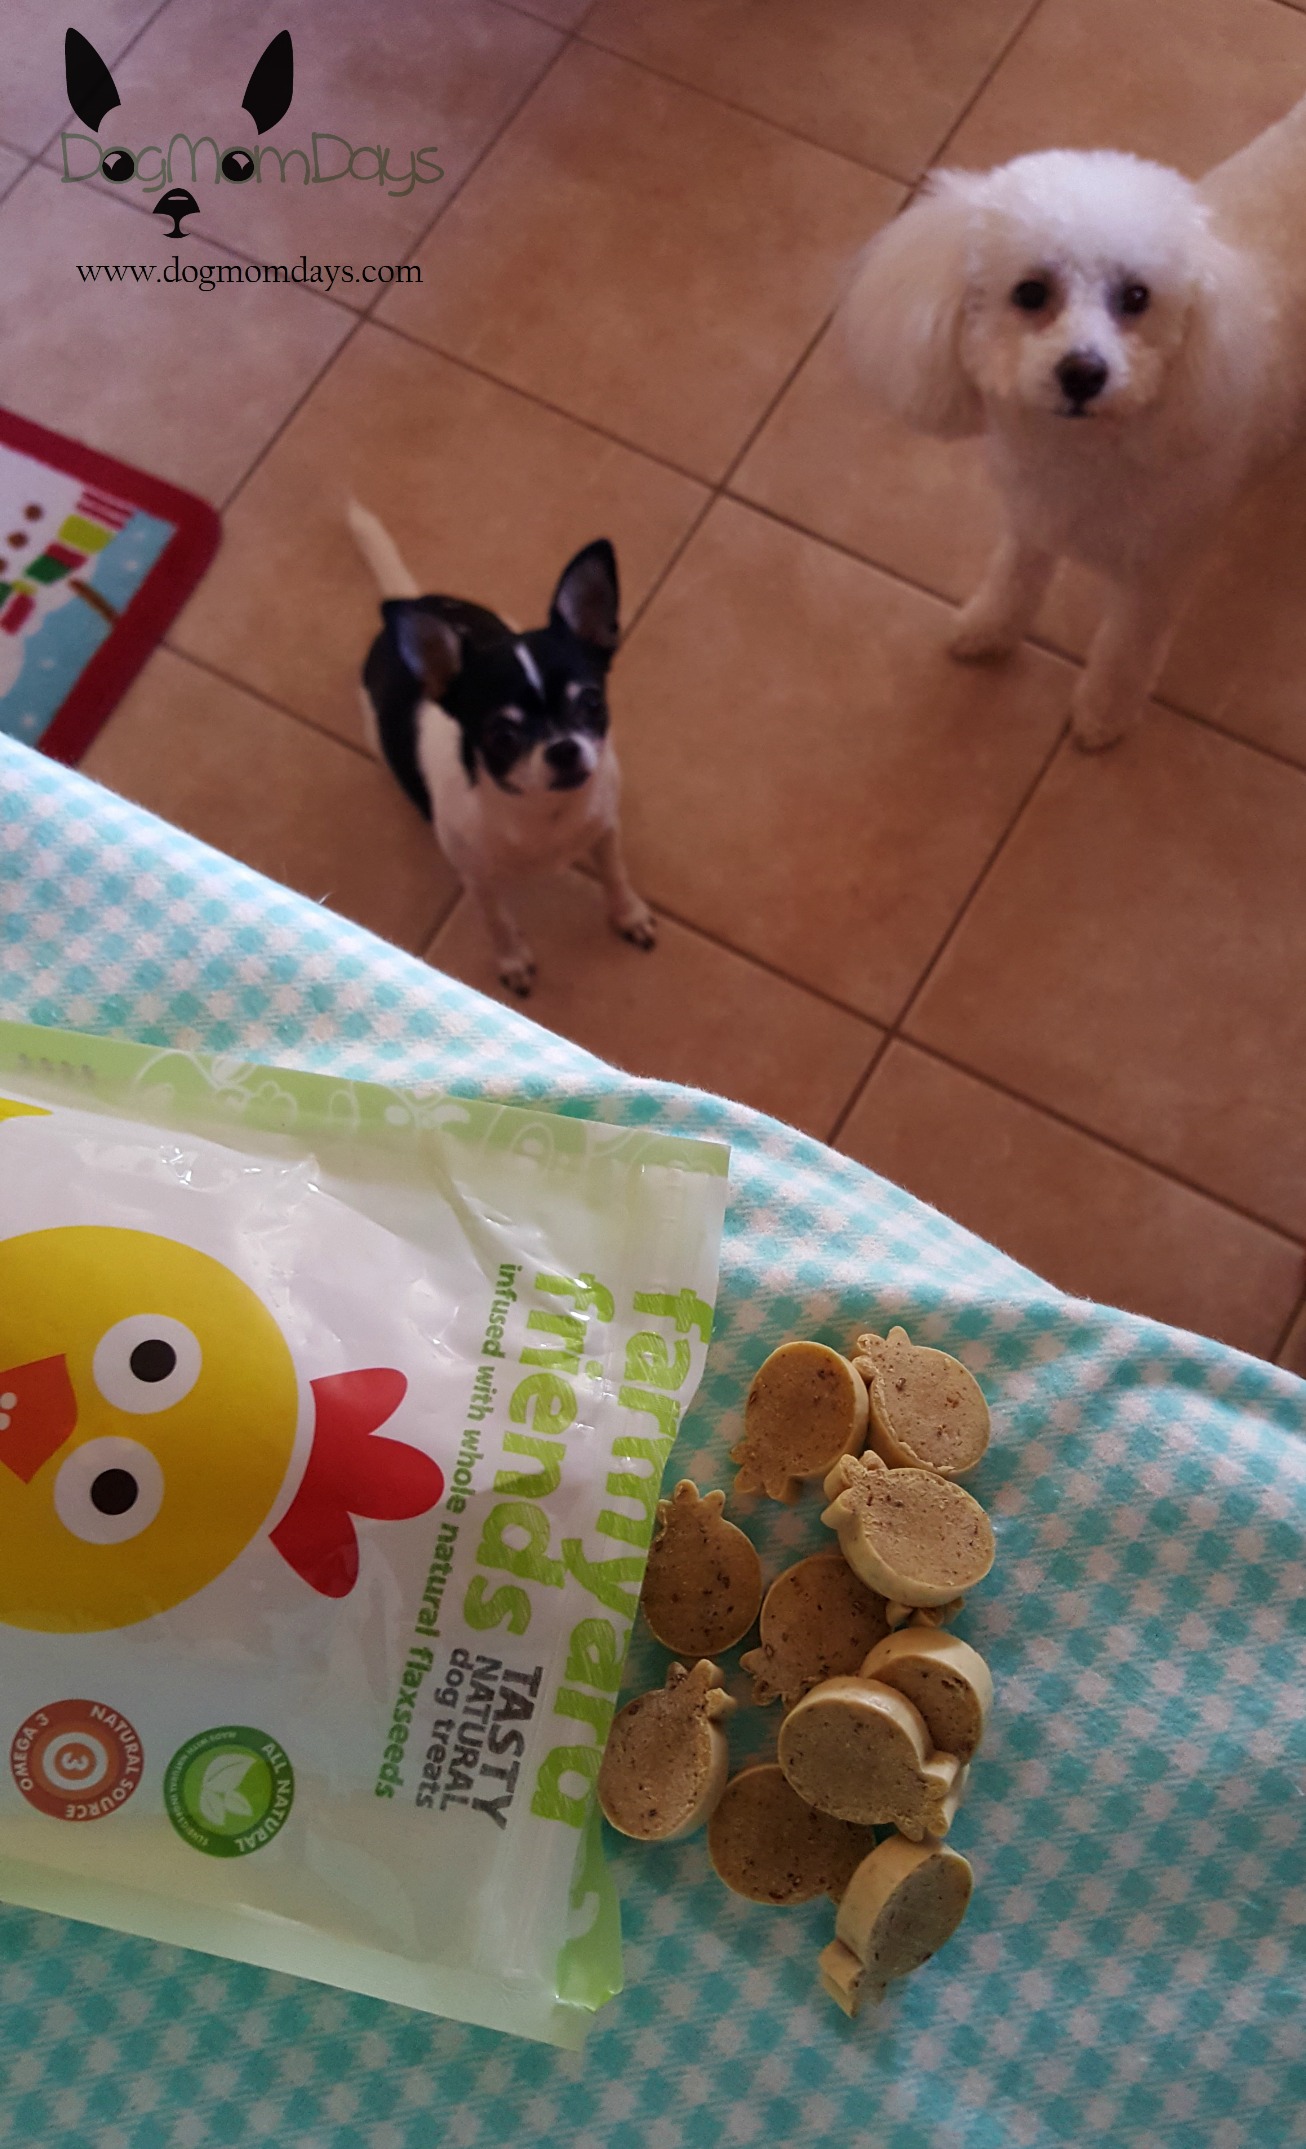 OzPure dog treats